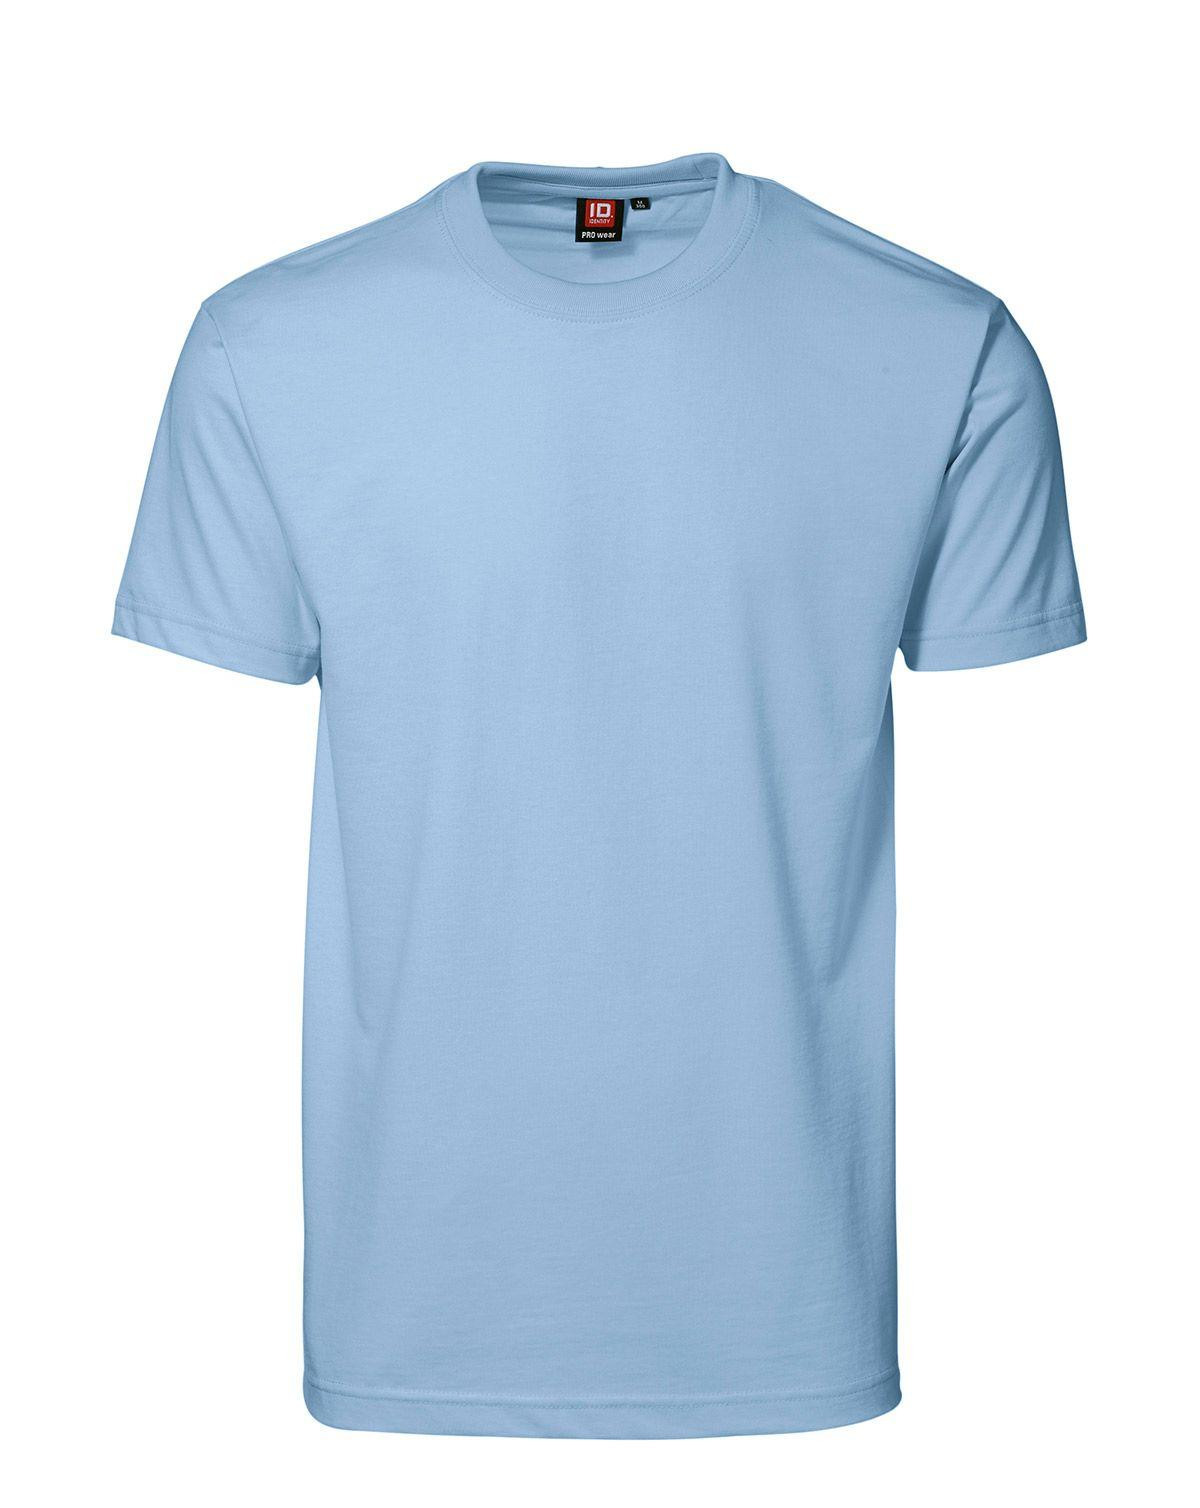 ID PRO Wear T-shirt til Herre (Lyseblå, XL)